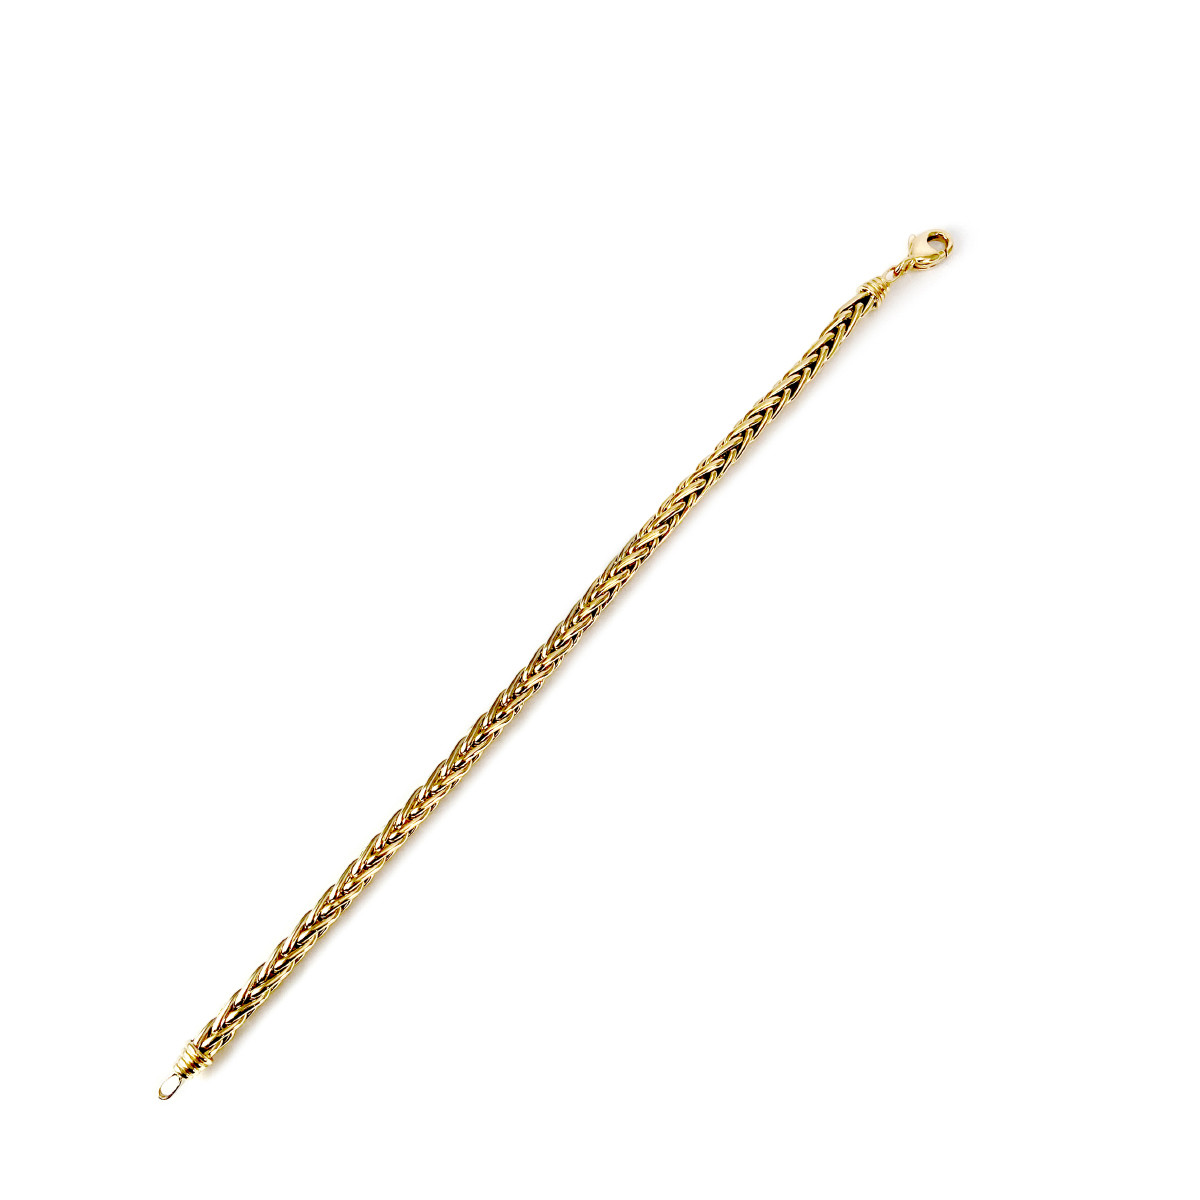 Bracelet d'occasion or 750 jaune maille palmier 21 cm - vue 3